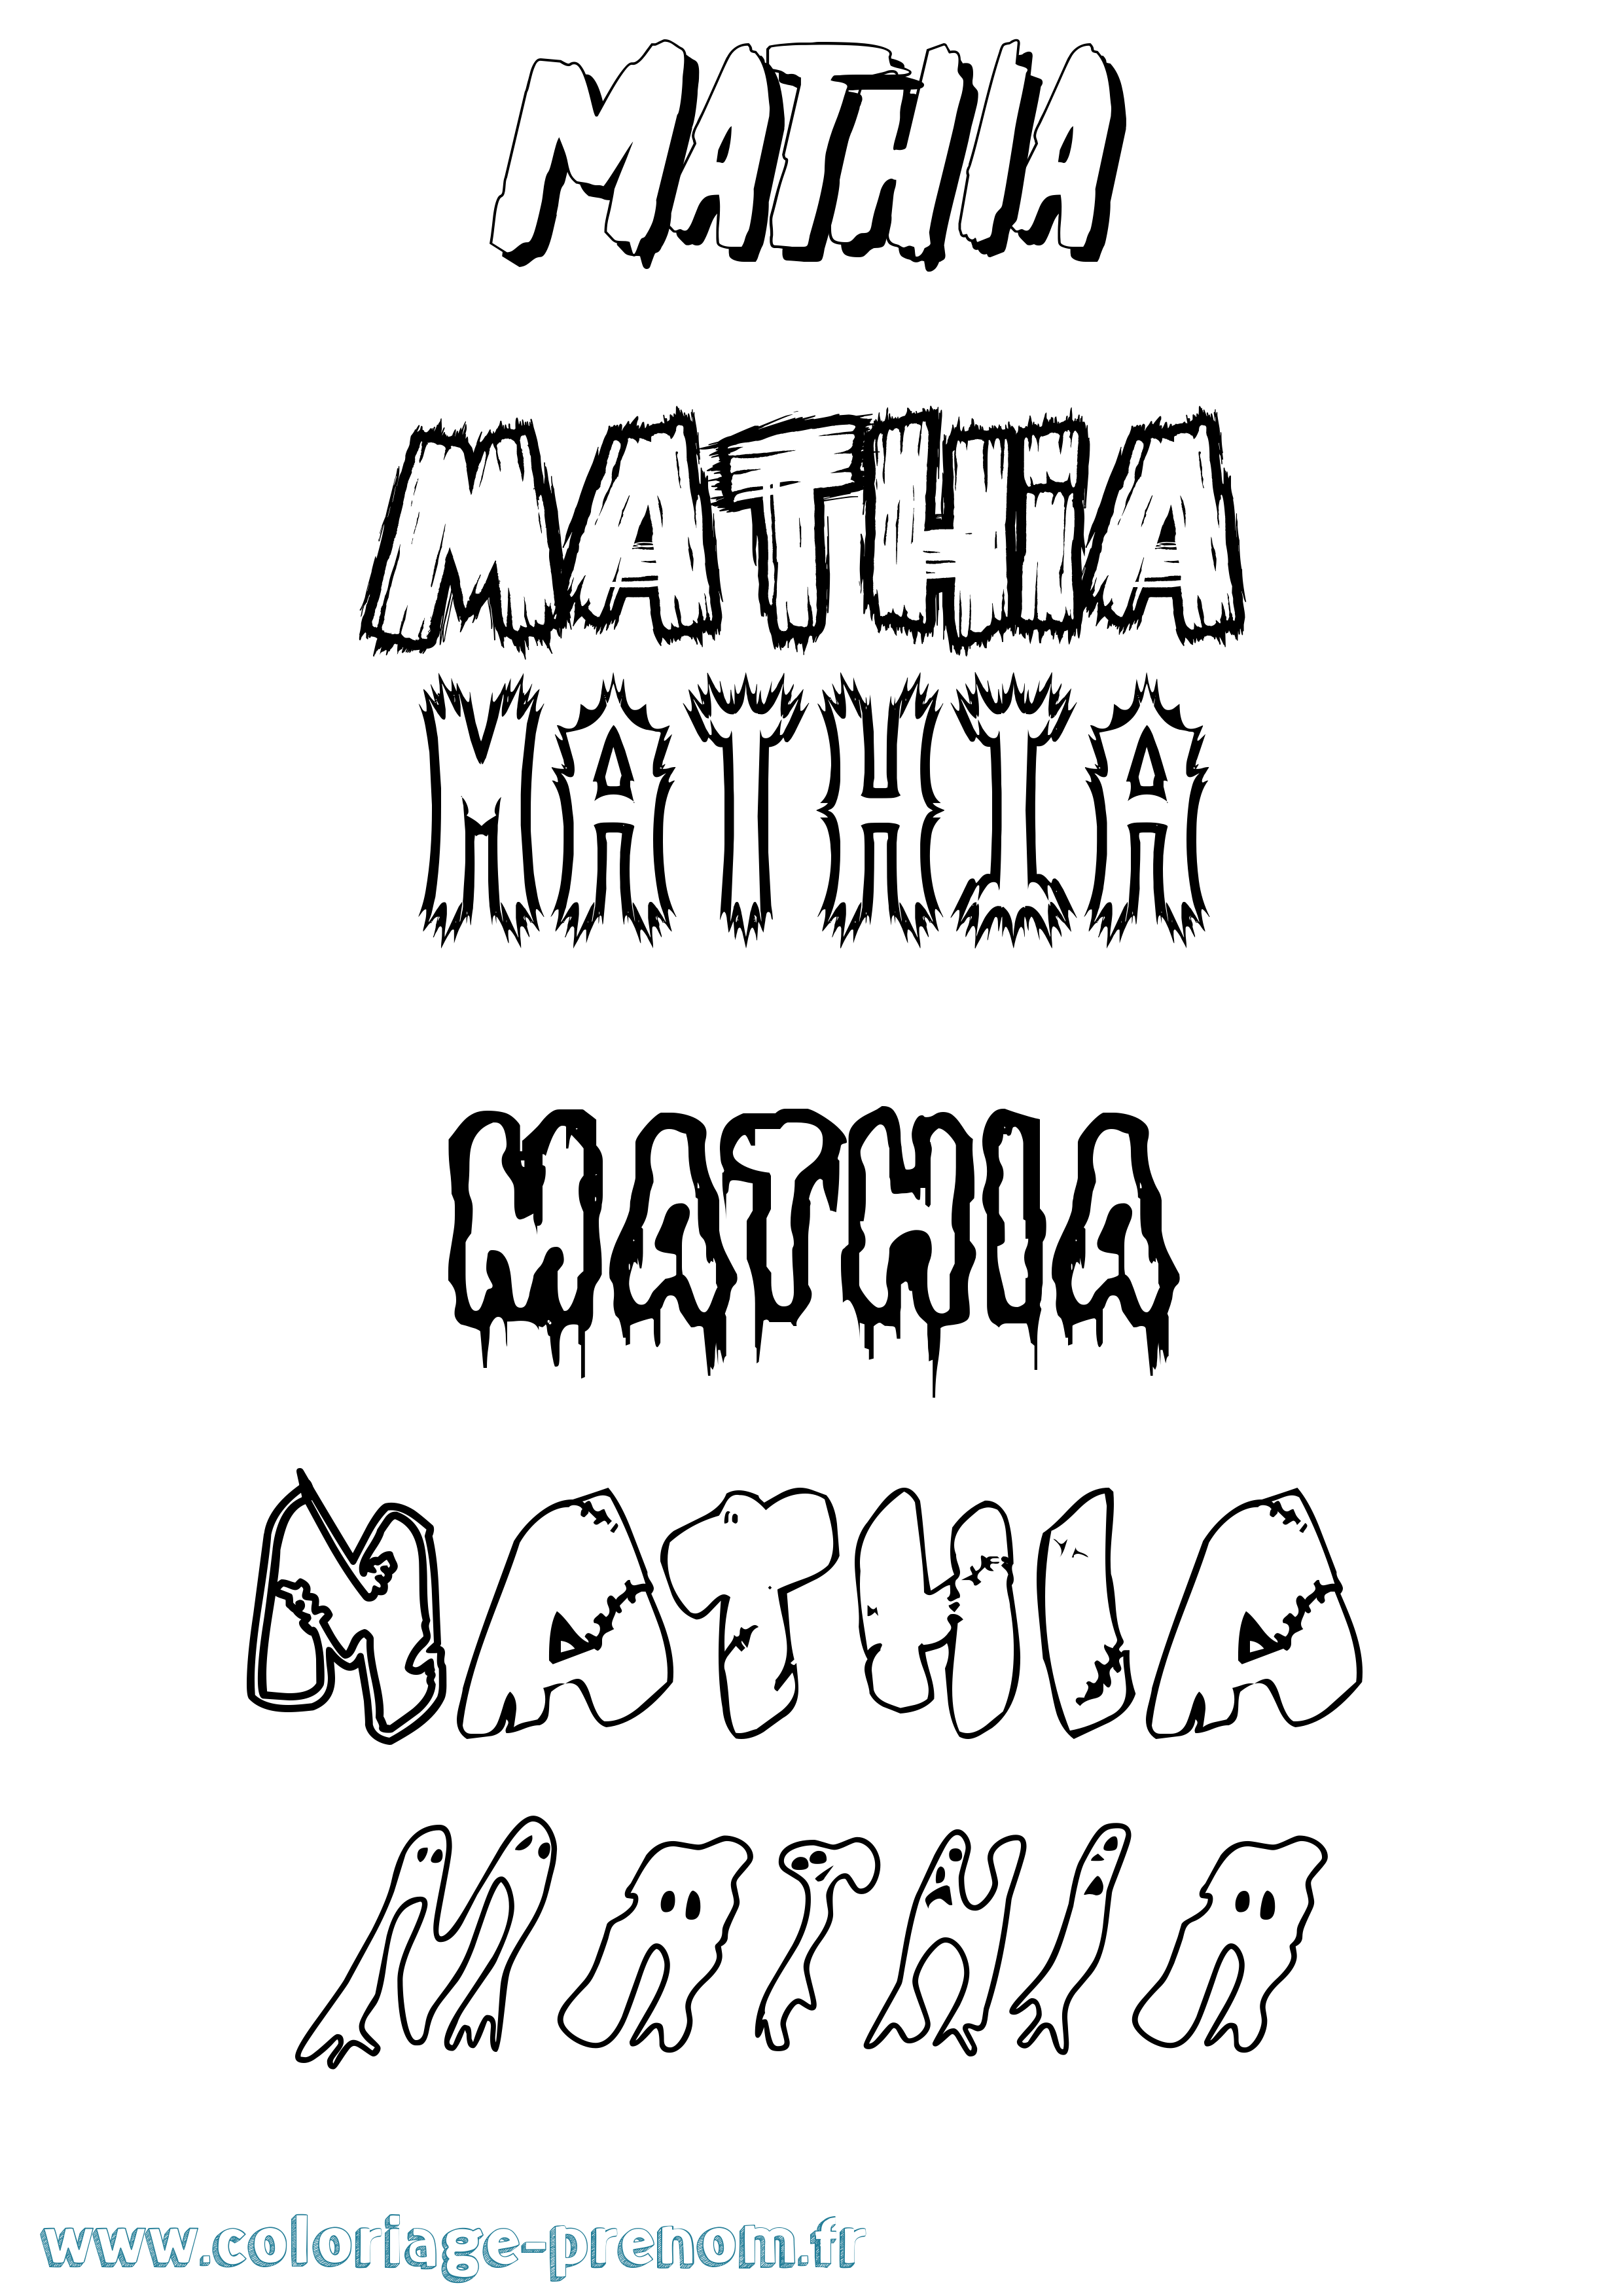 Coloriage prénom Mathia Frisson